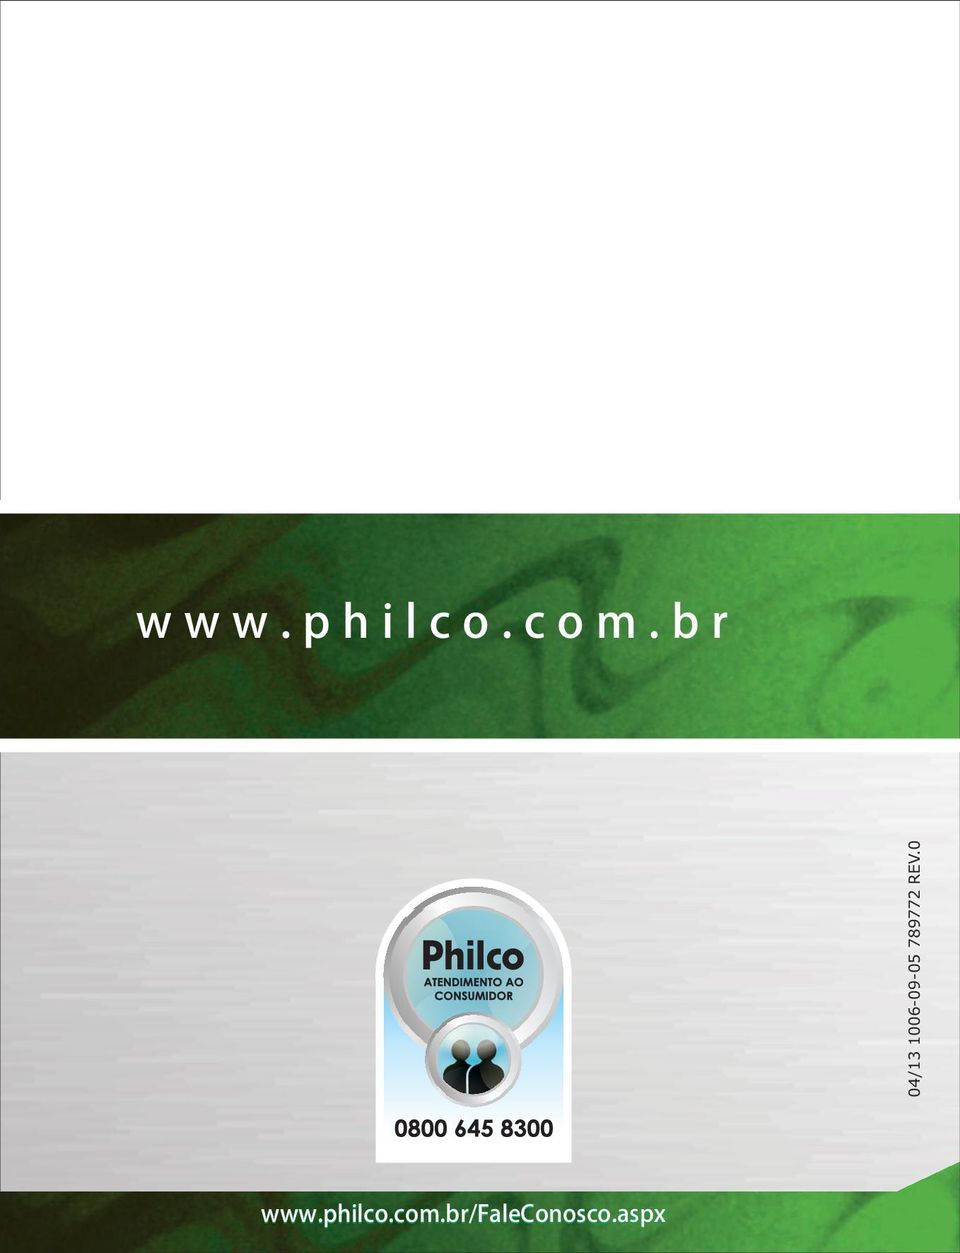 philco.com.br www.